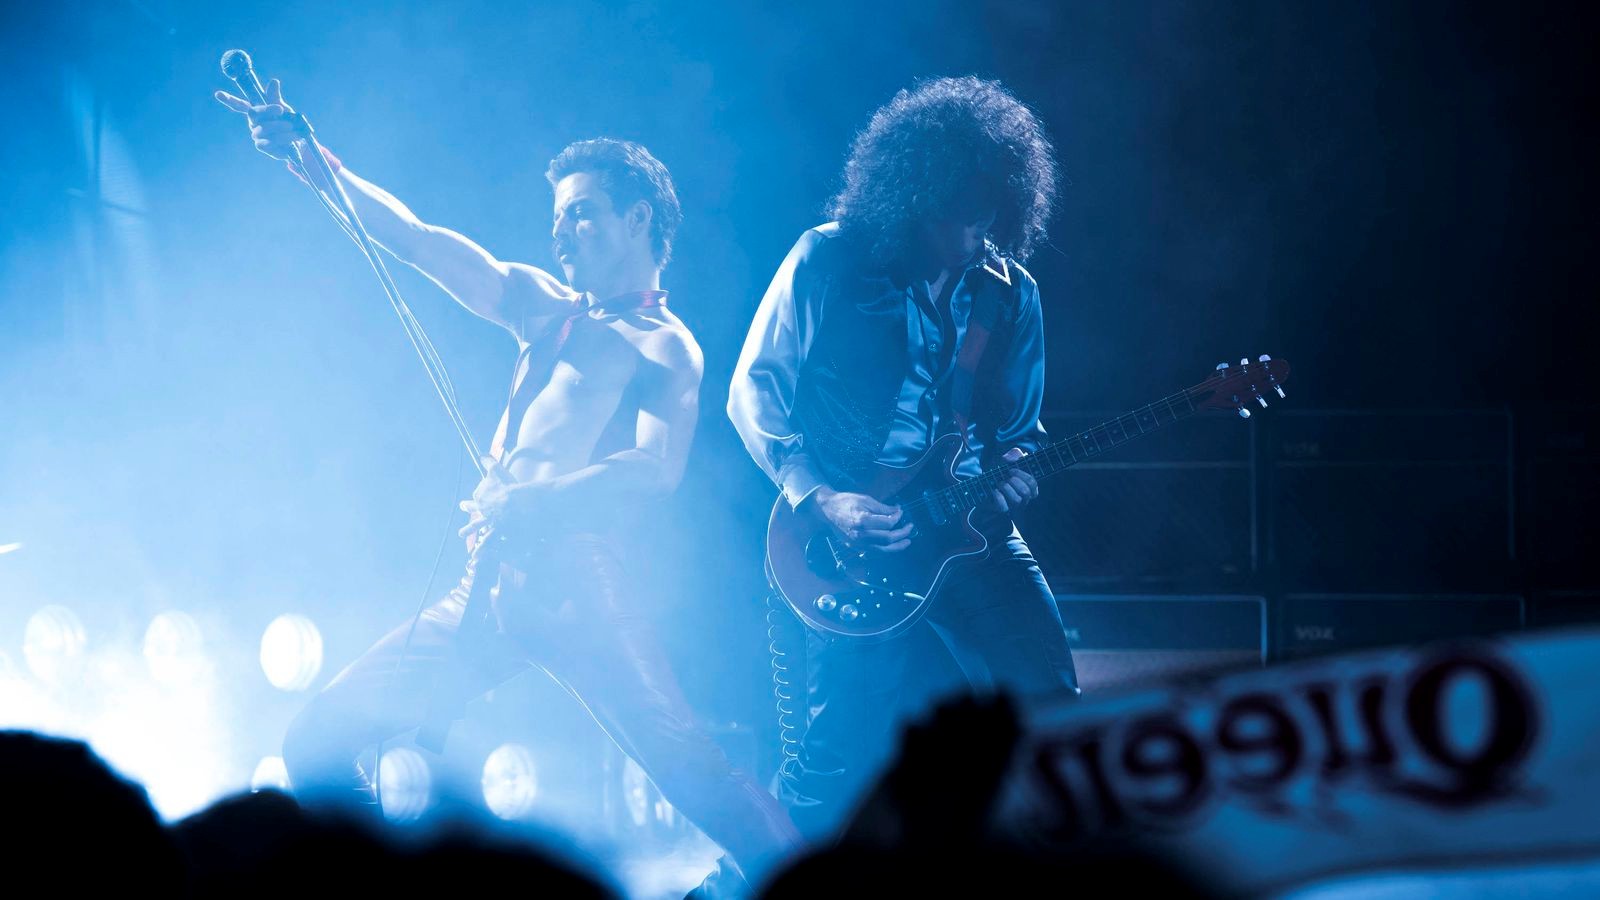 [رپورتاژ آگهی] بررسی فیلم Bohemian Rhapsody / شکل گیری گروه موسیقی کوئین